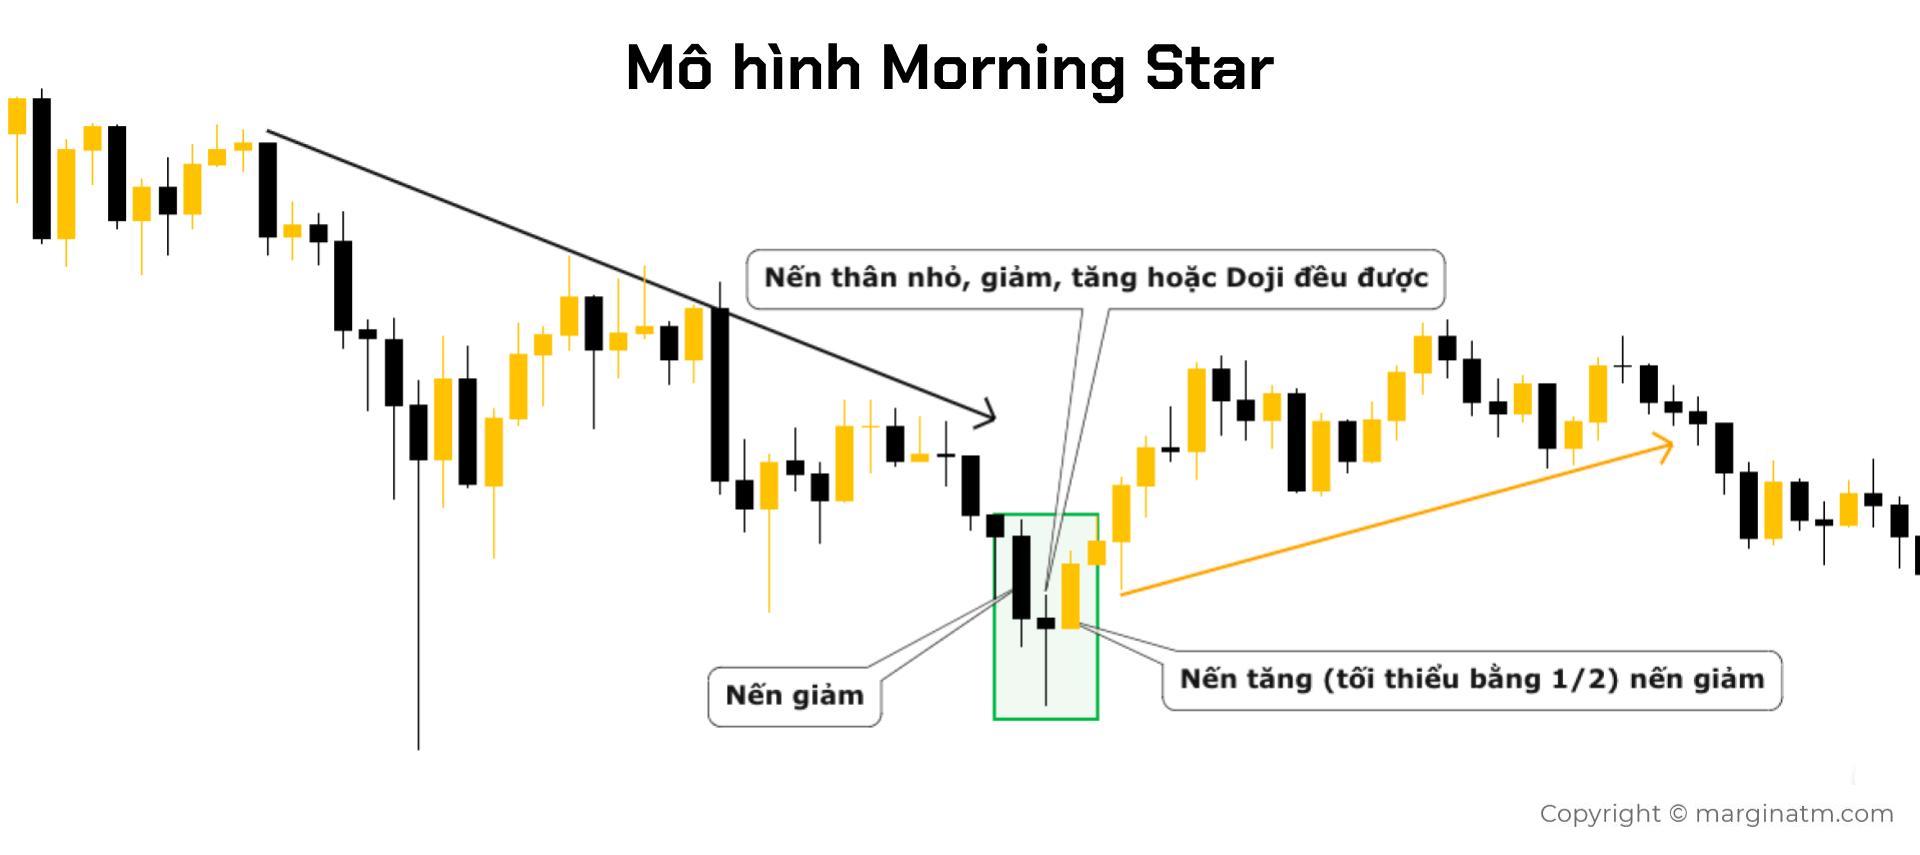 Nến Morning Star là gì? 3 Cách giao dịch với mô hình Morning Star